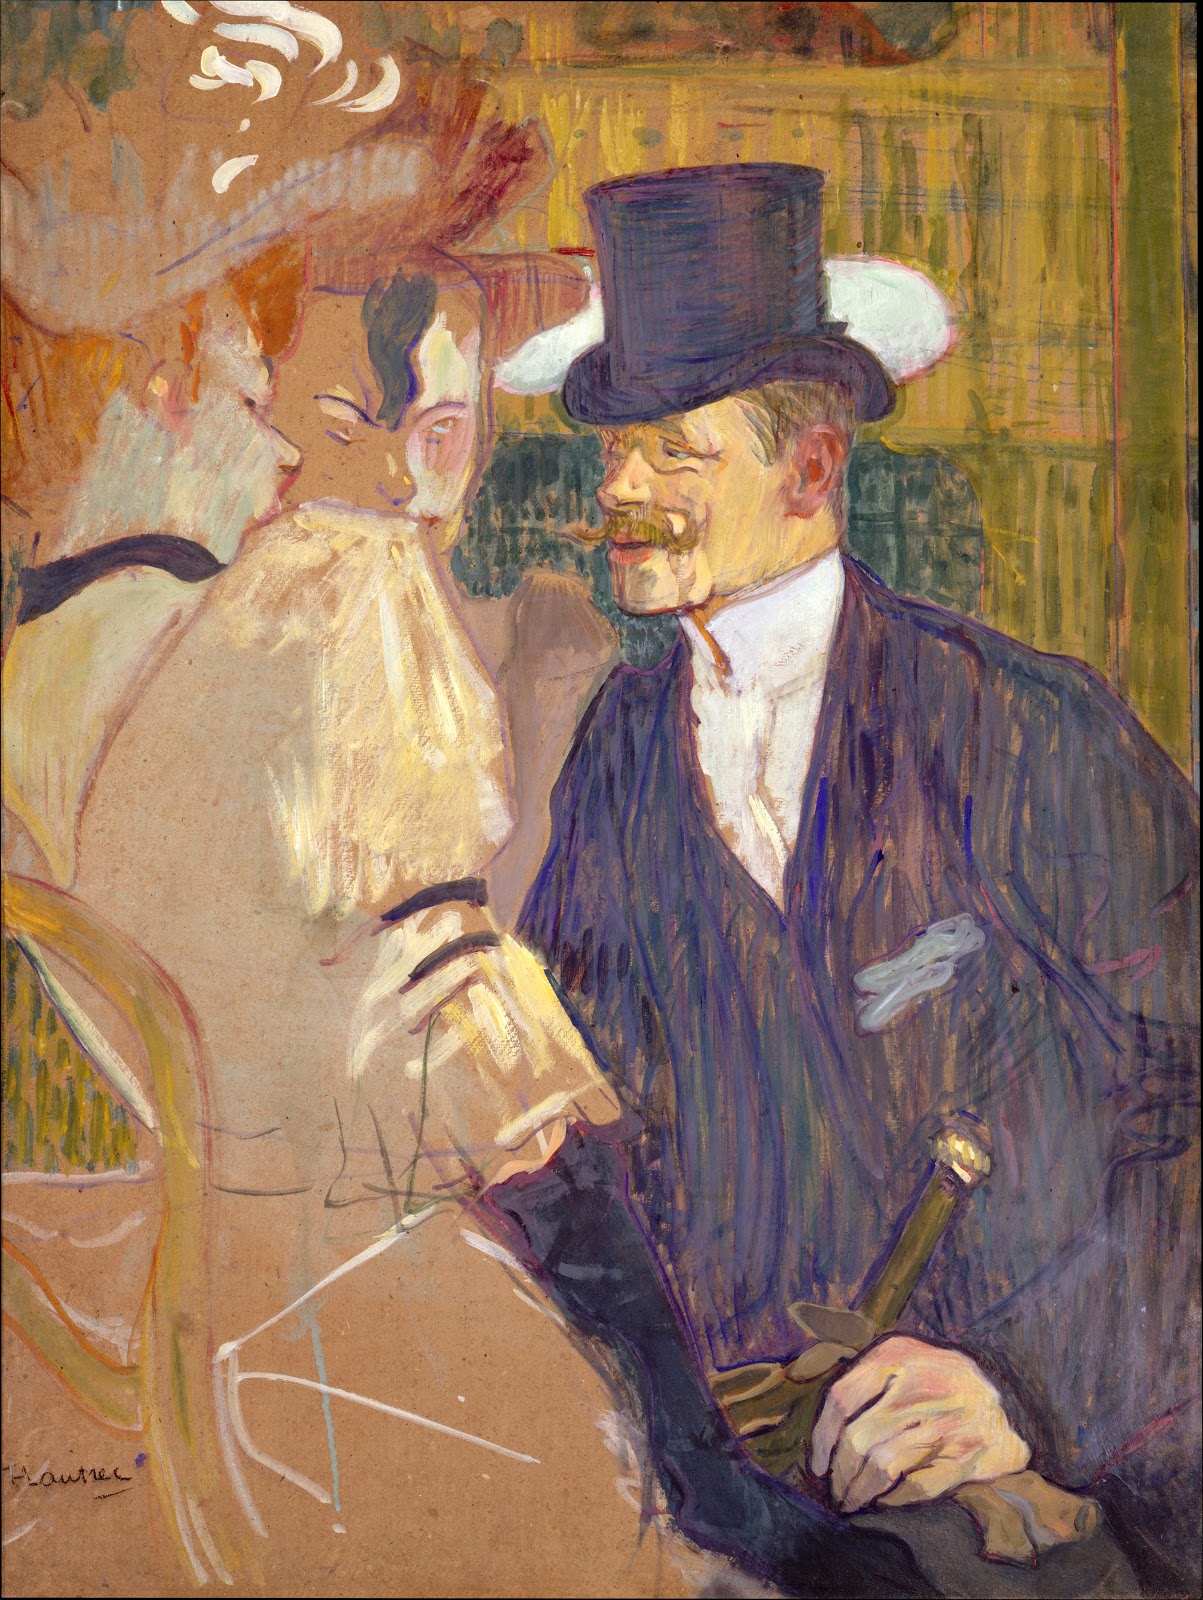 Henri+de+Toulouse+Lautrec-1864-1901 (112).jpg